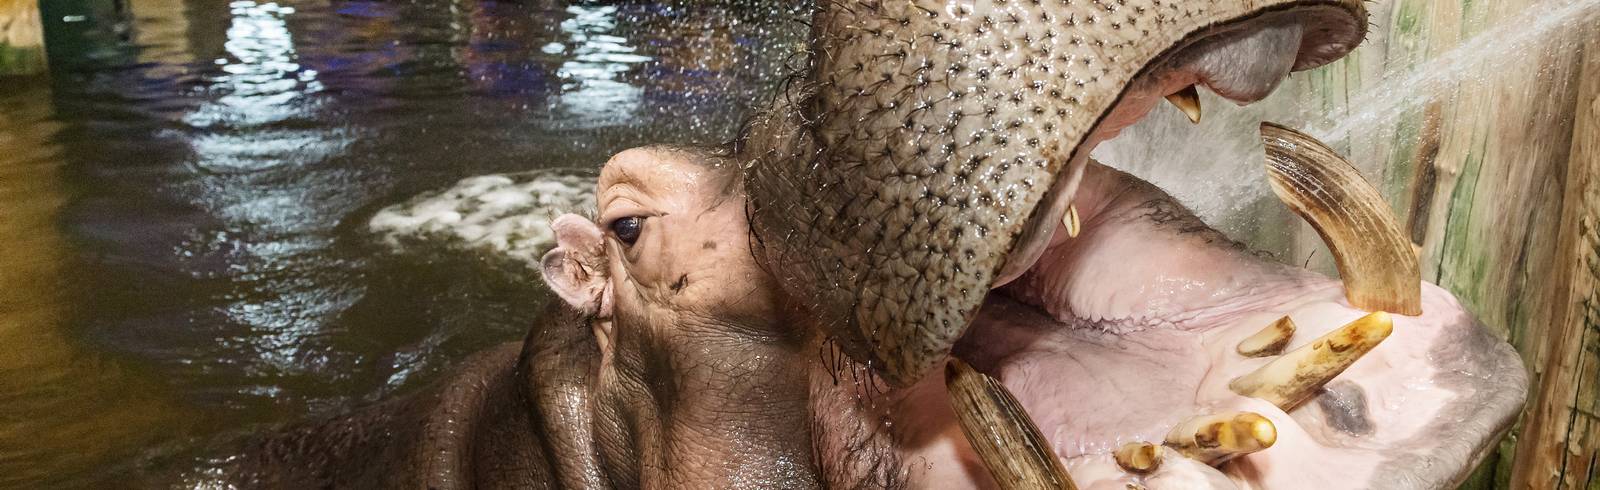 Welttag der Hippos: Äpfel und Munddusche